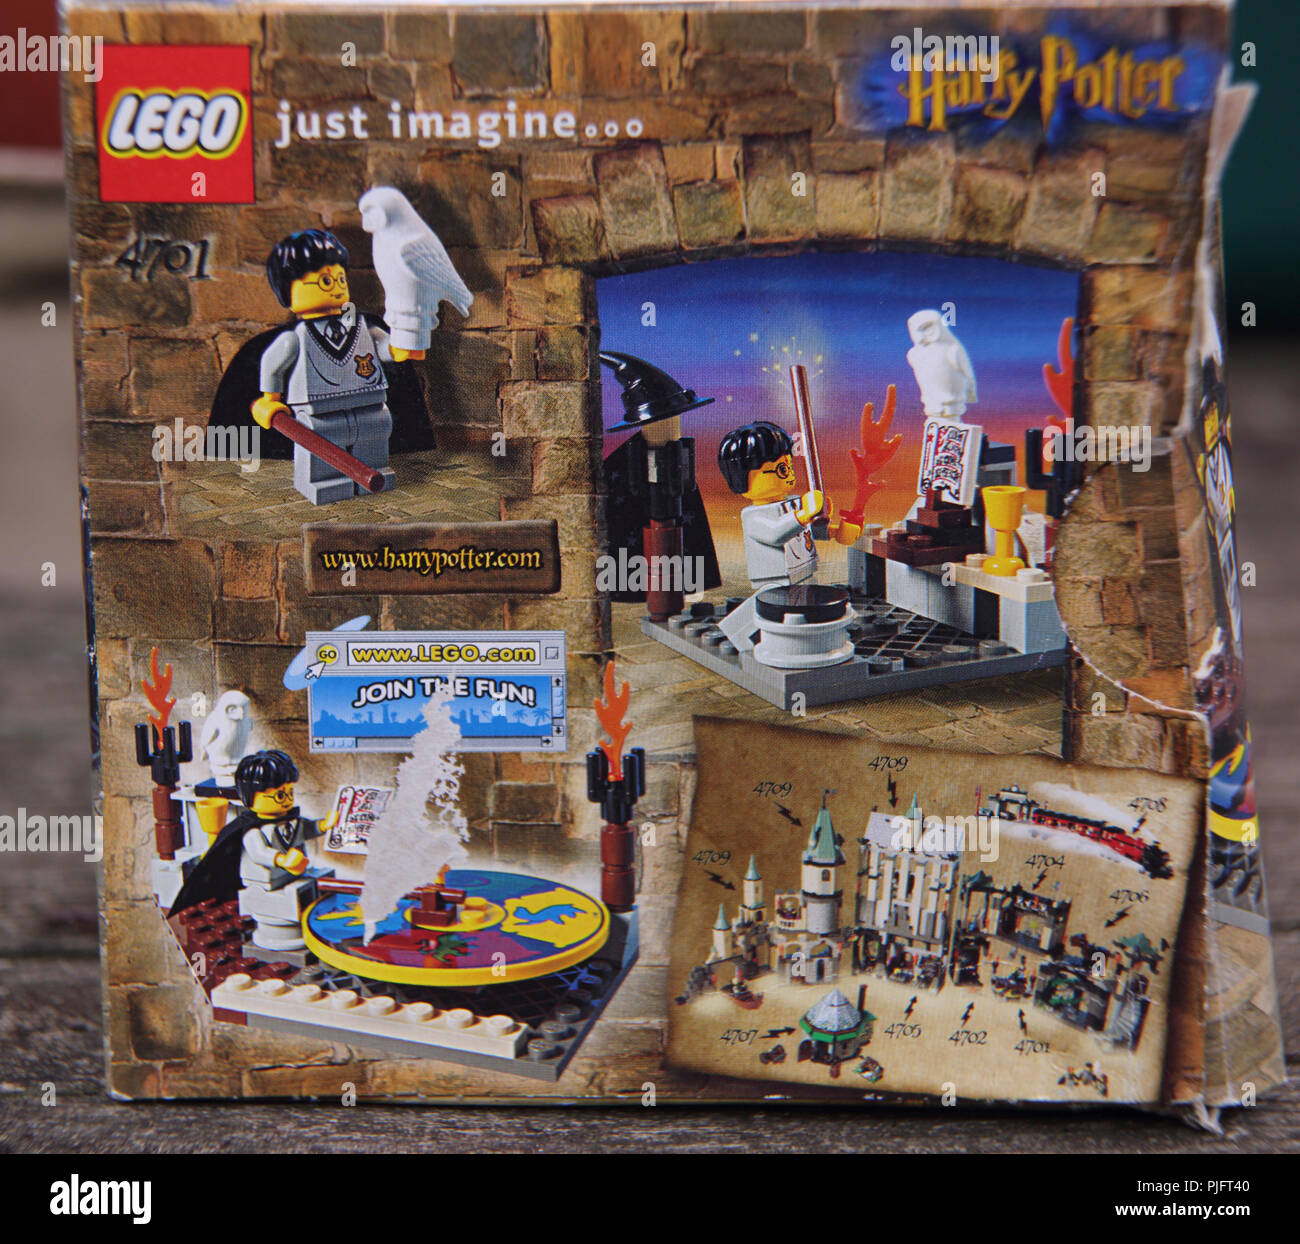 Lego Harry Potter und der Stein der Weisen Hut Stockfotografie - Alamy